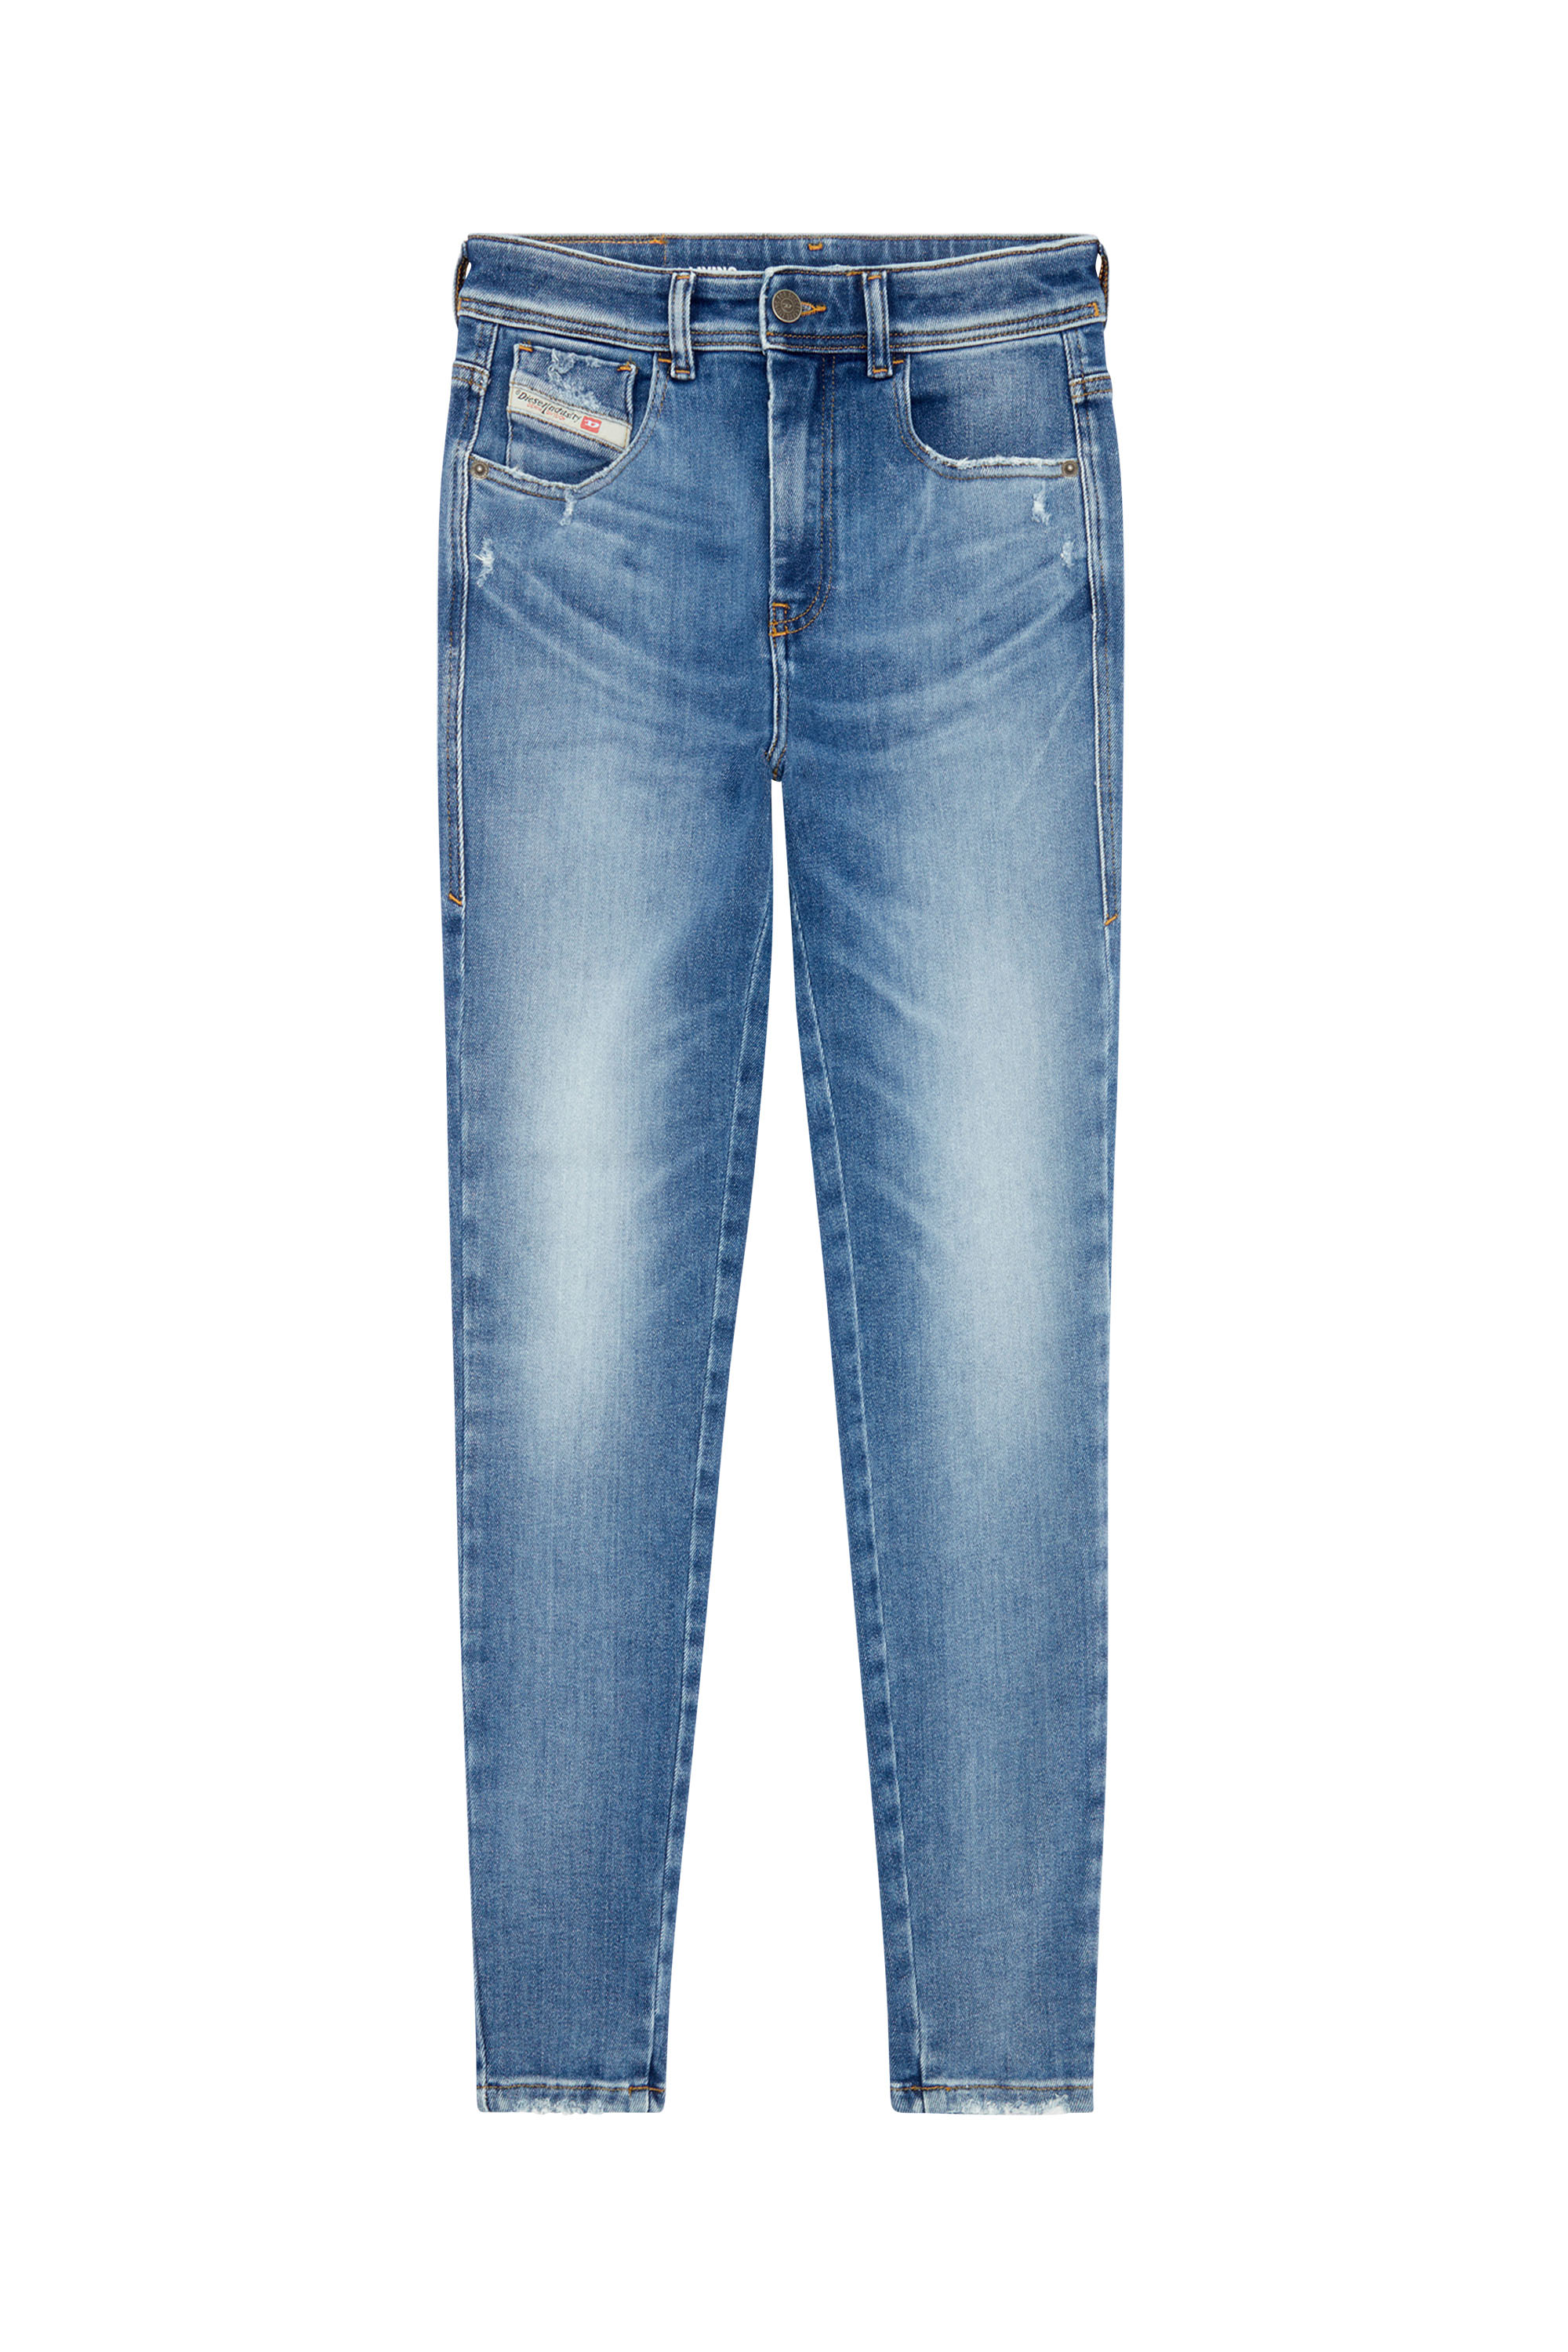 Diesel - Super skinny Jeans 1984 Slandy-High 09H92, Mujer Super skinny Jeans - 1984 Slandy-High in Azul marino - Image 3